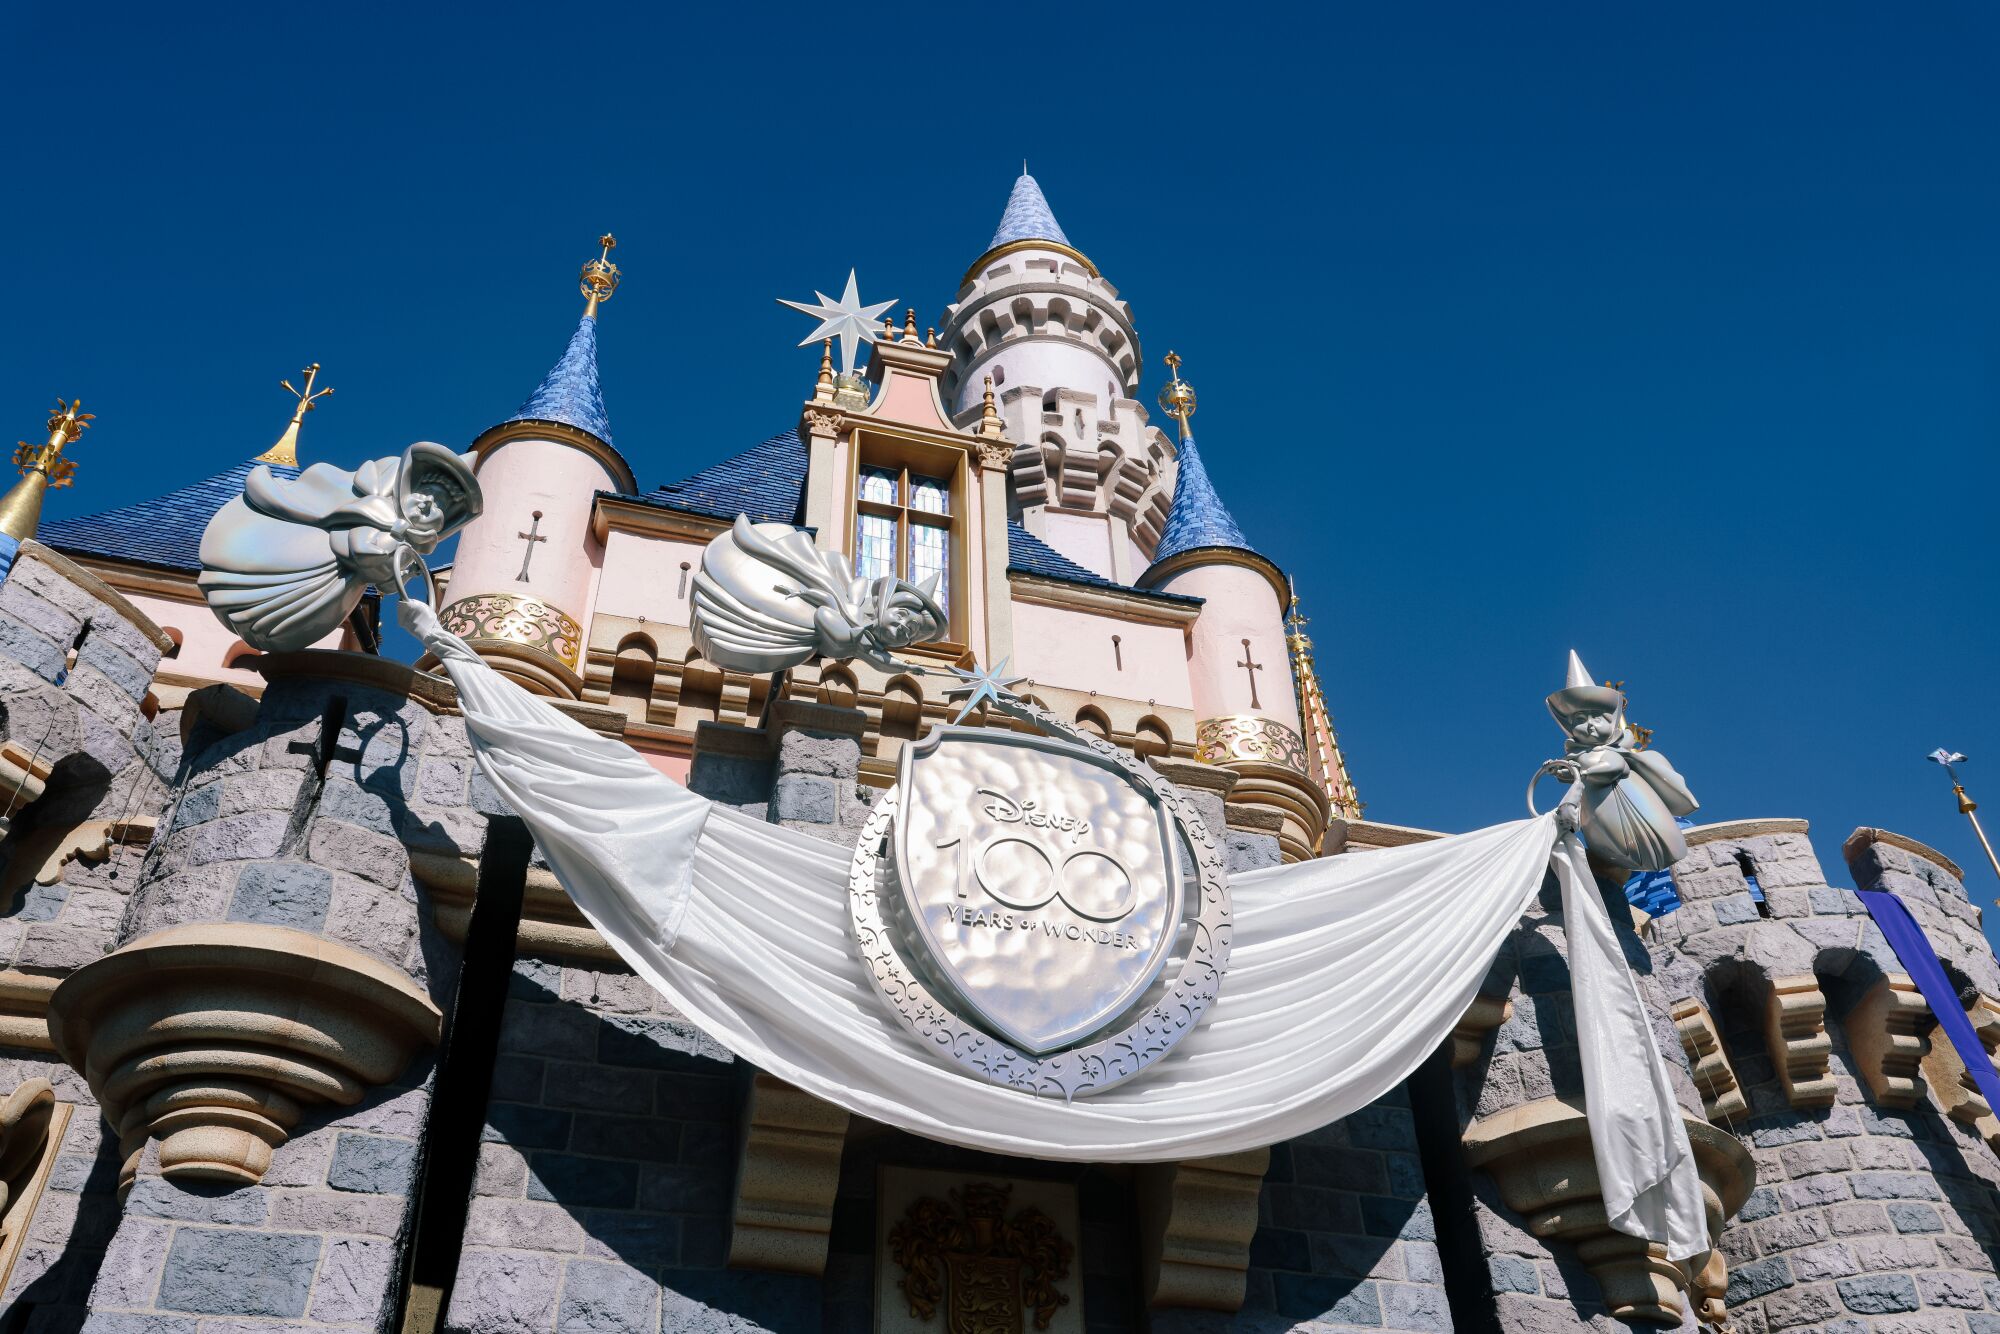 Disney'in Uyuyan Güzel'in Şatosu 100. yıl dönümü pankartlarıyla süslendi.